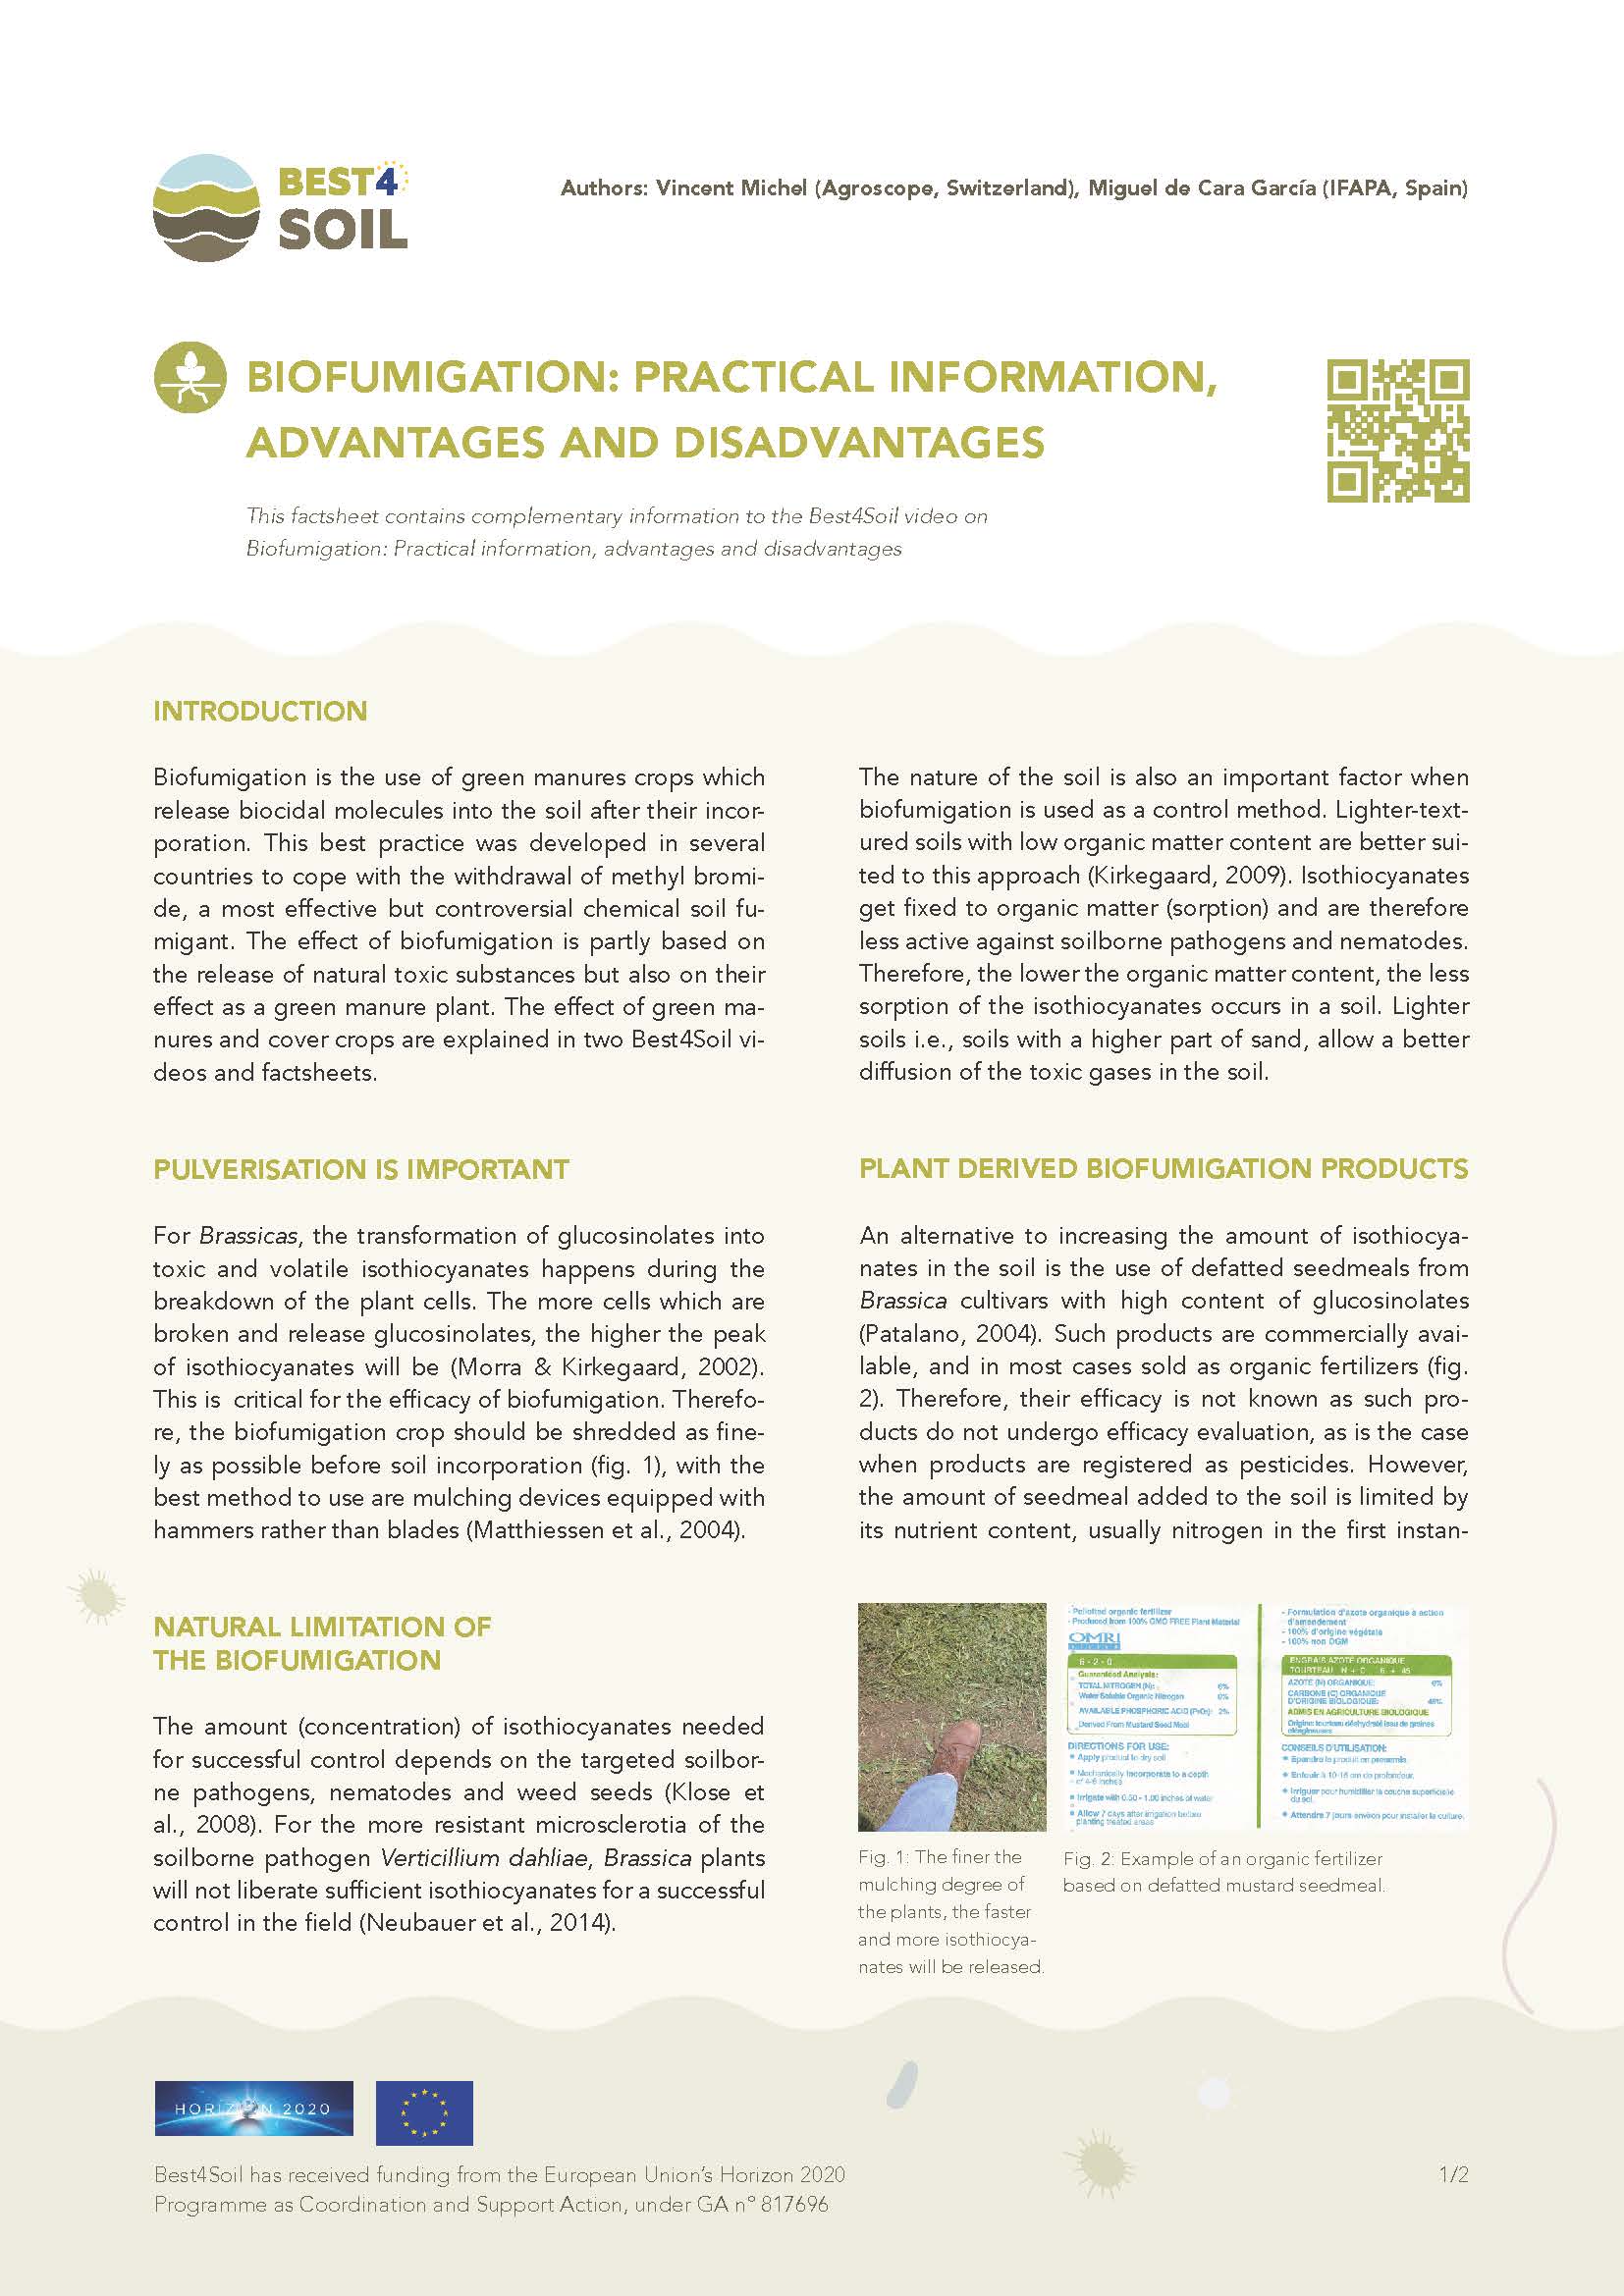 Биофумигация: Практическа информация, предимства и недостатъци (информационен лист за Best4Soil)